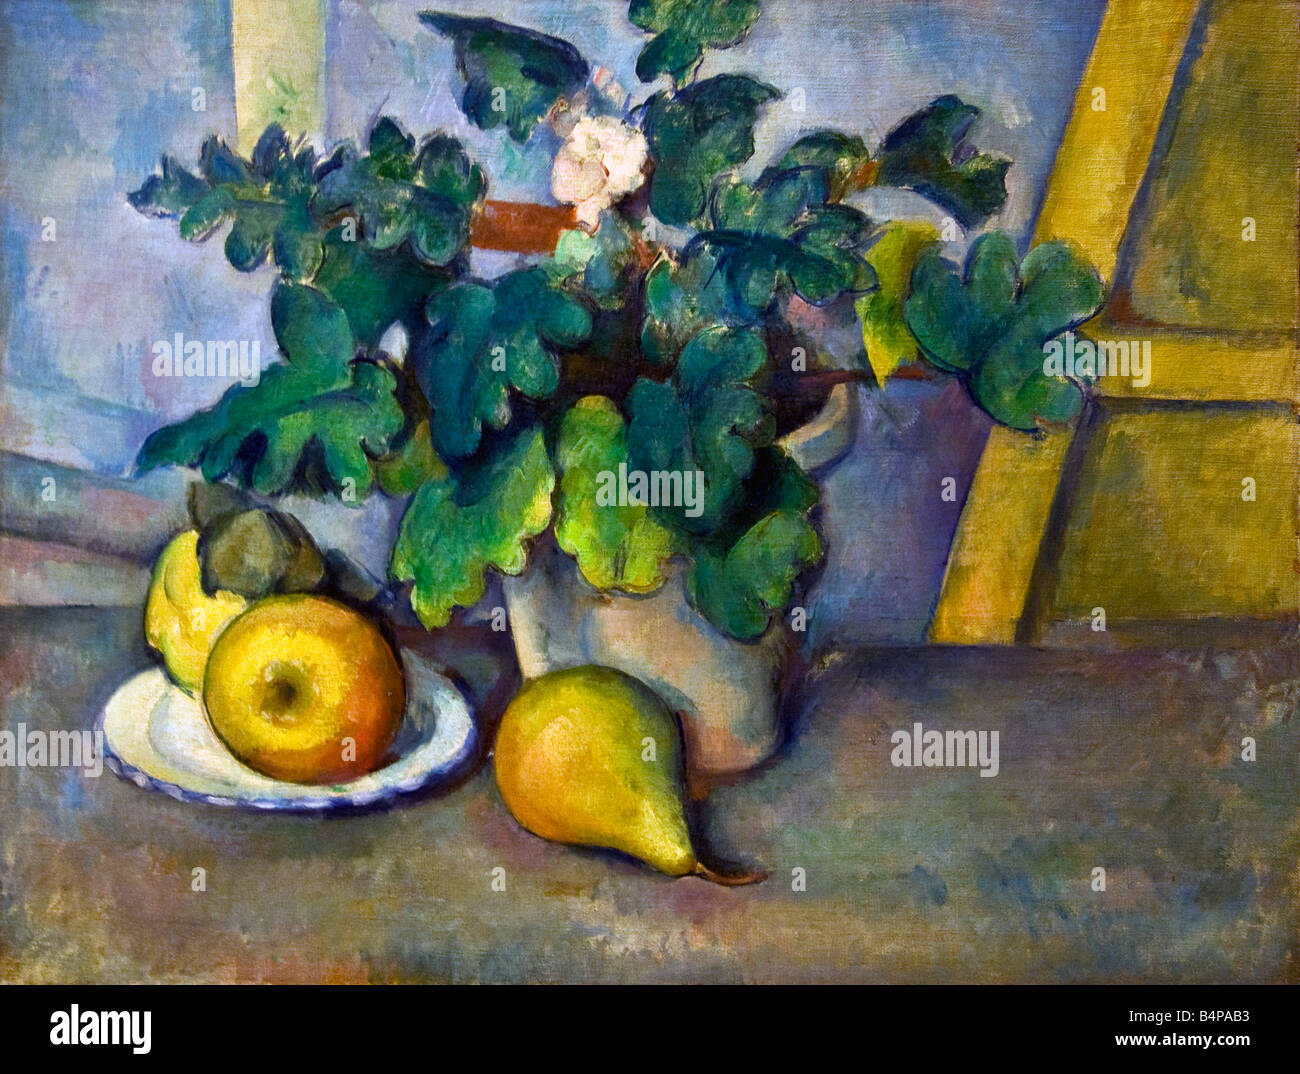 Pot de primevères et de Paul Cézanne Fruits huile sur toile 1888-1890 Courtauld Gallery Somerset House Londres Banque D'Images